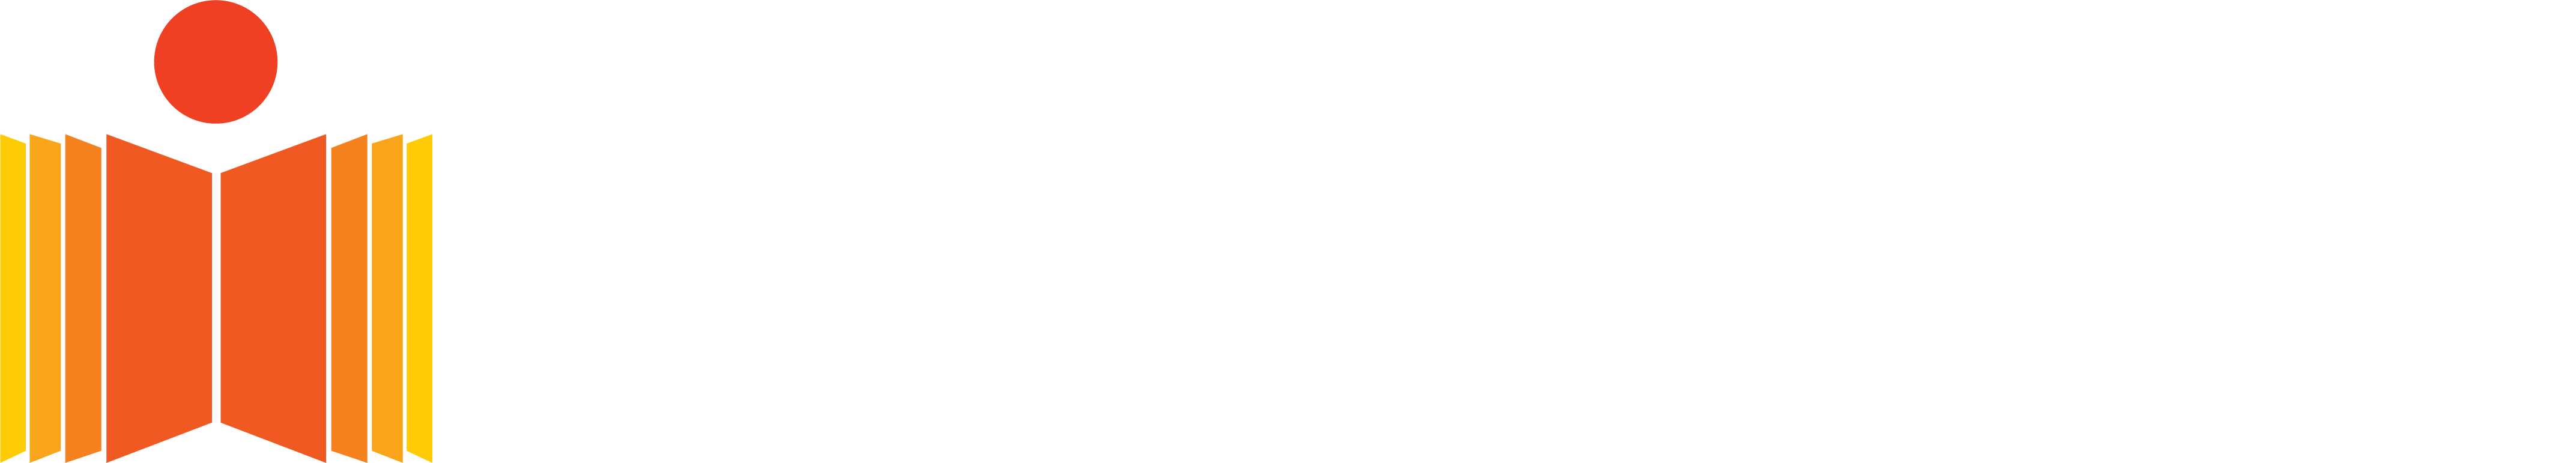 OATbyIITH Open to All Teaching [OAT] @IITHYderabad; ft: Prof B S Murty-  Director, IITH - YouTube